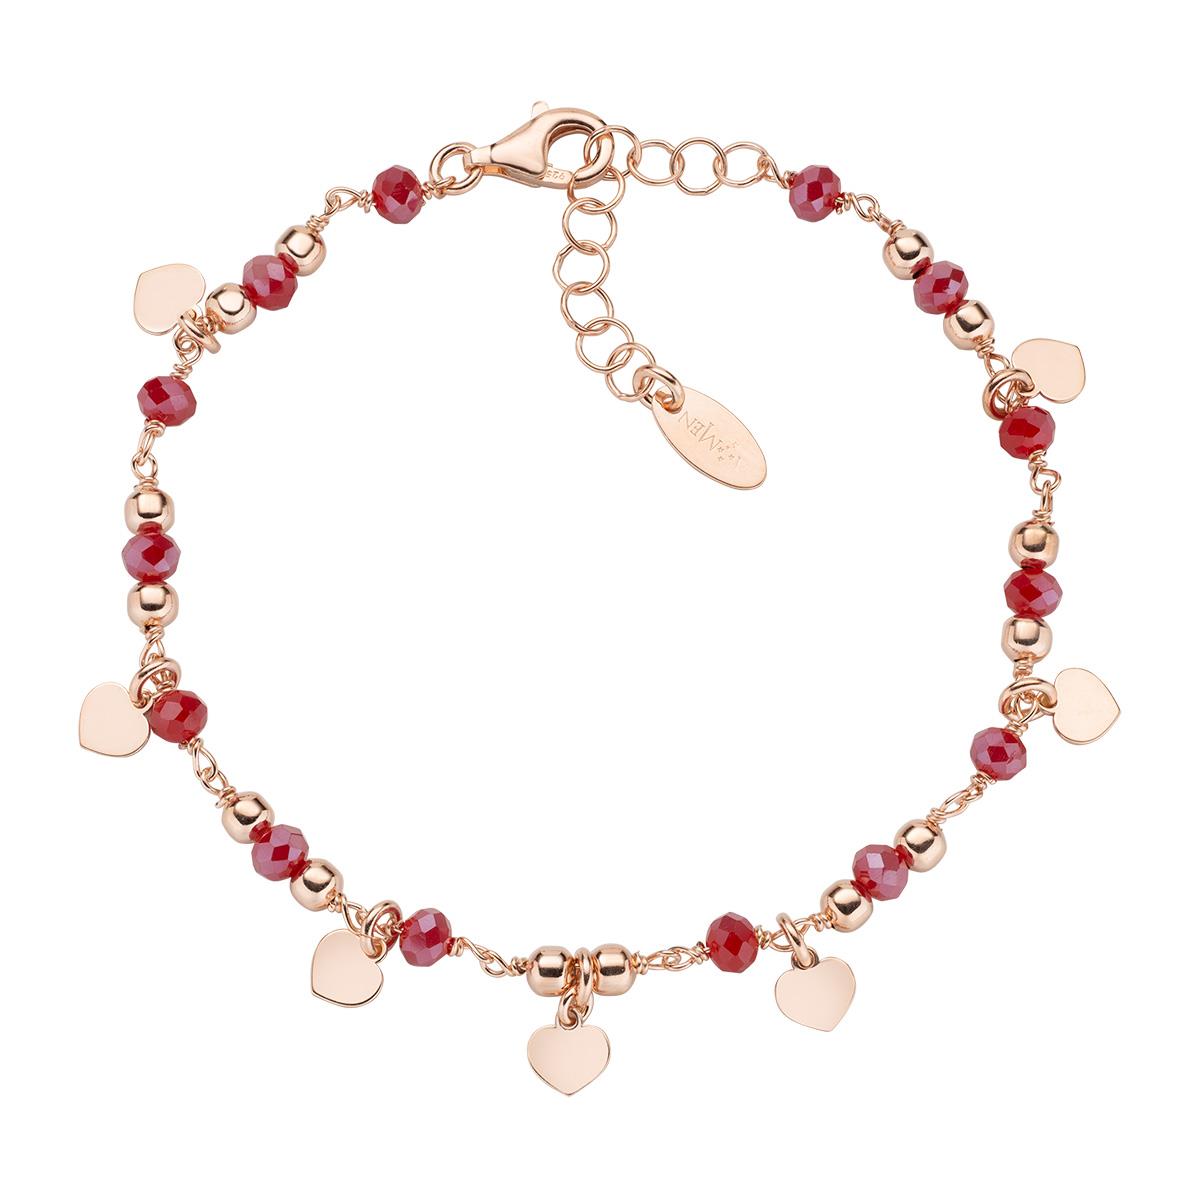 Bracciale Charm Elegance Rosè con Cristalli Rubino - Amen Collection Ref. BRMCURR - AMEN